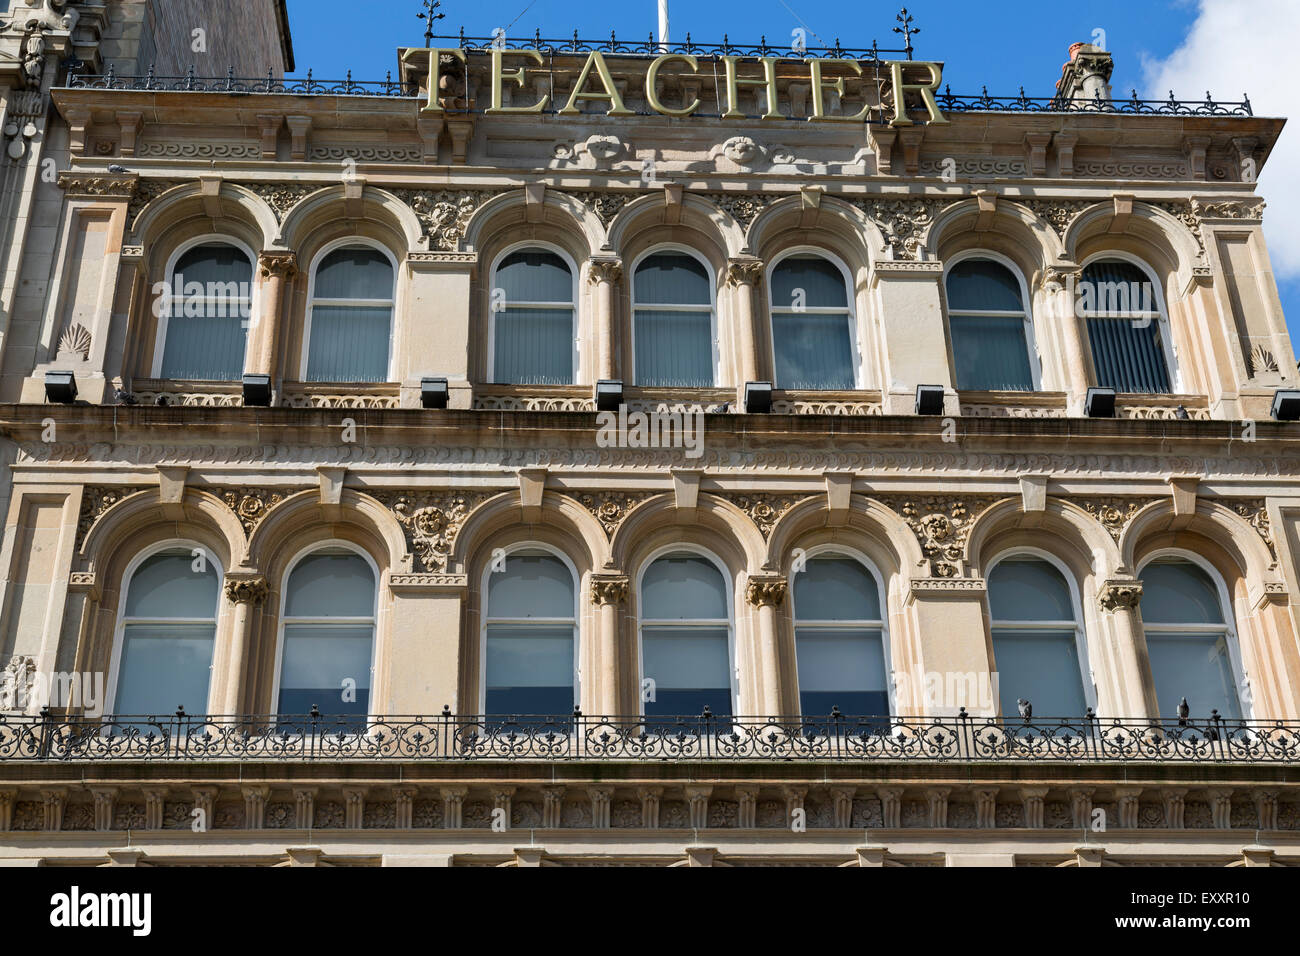 Das William Teacher Whisky Gebäude façade, viktorianische Architektur im Stadtzentrum von Glasgow, St. Enoch Square, Schottland, Großbritannien Stockfoto